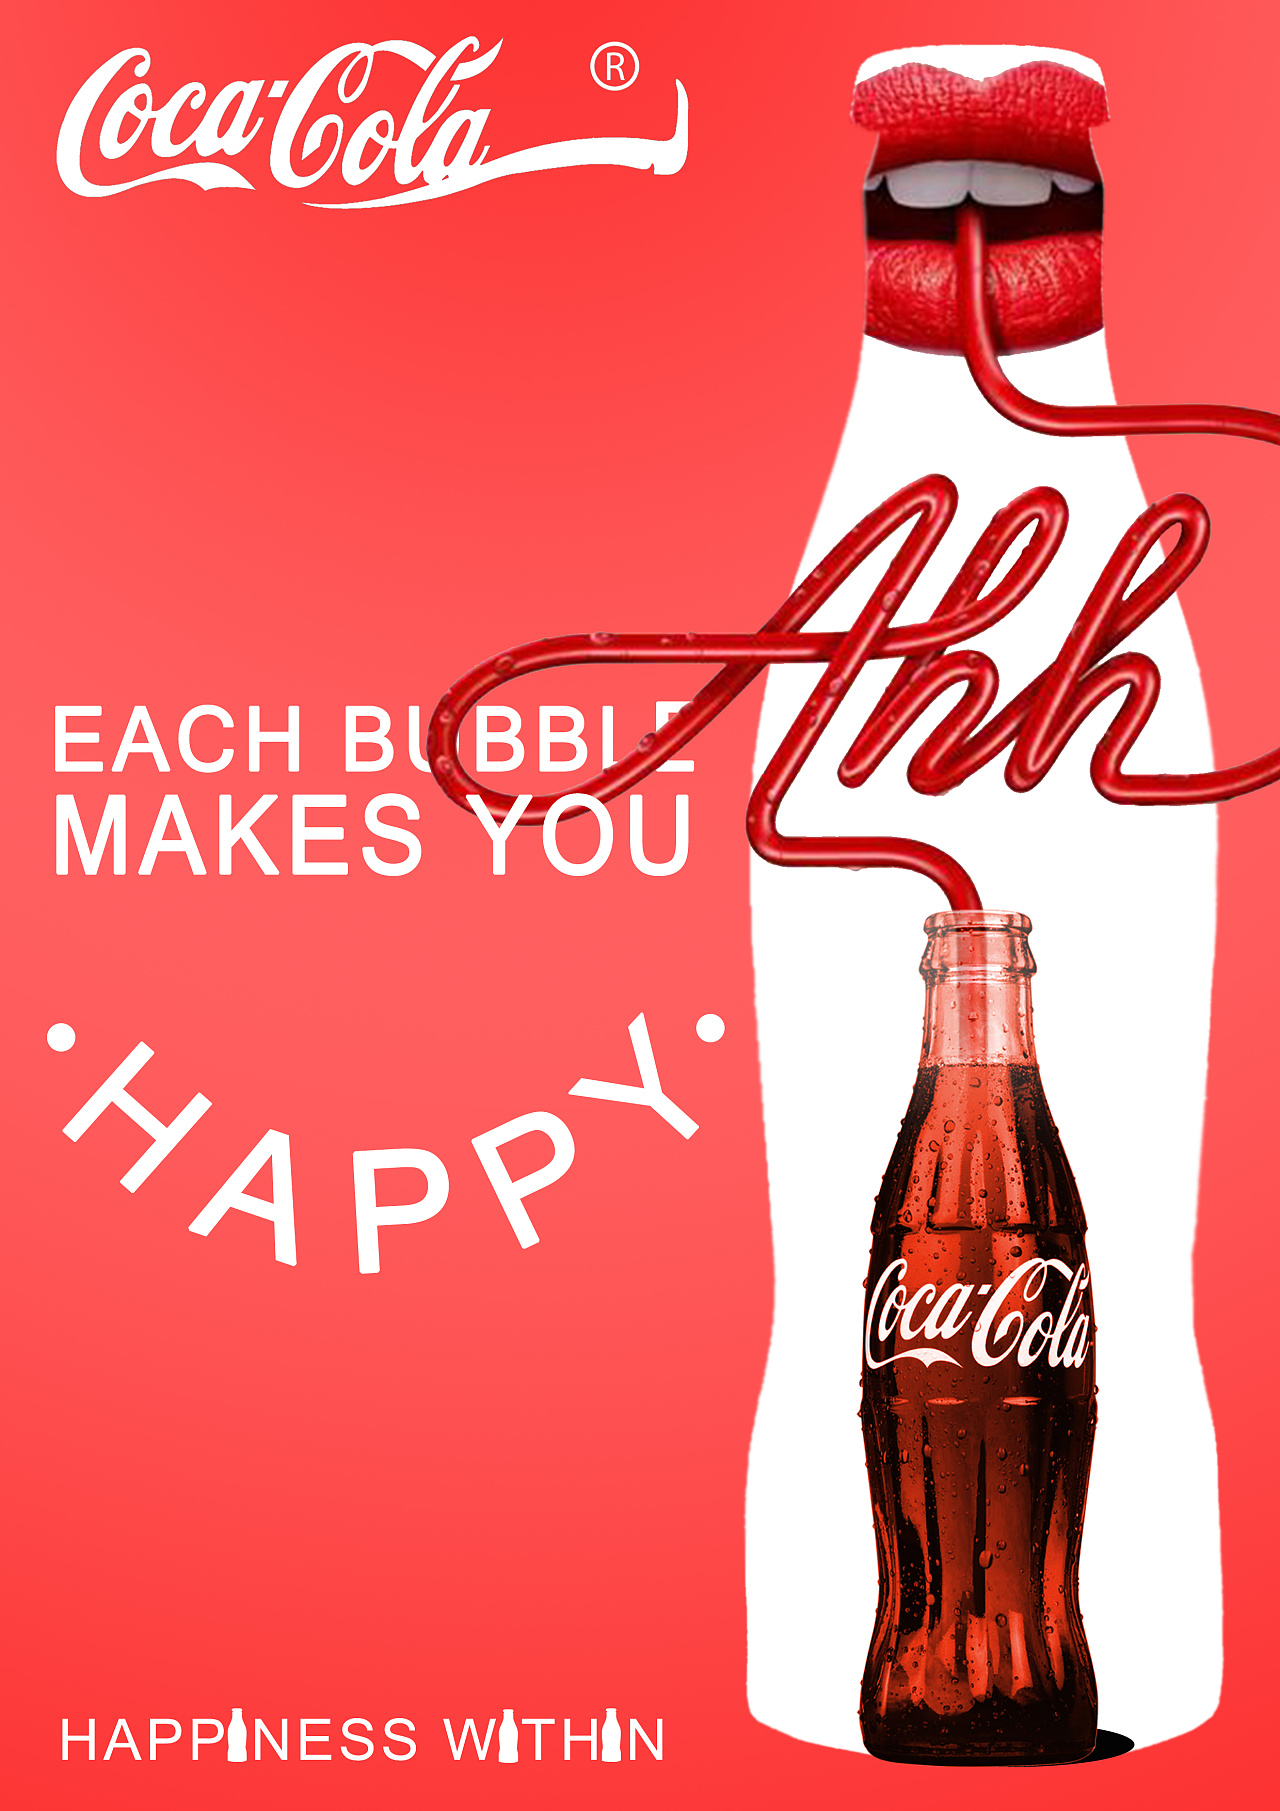 可口可乐的宣传海报图片